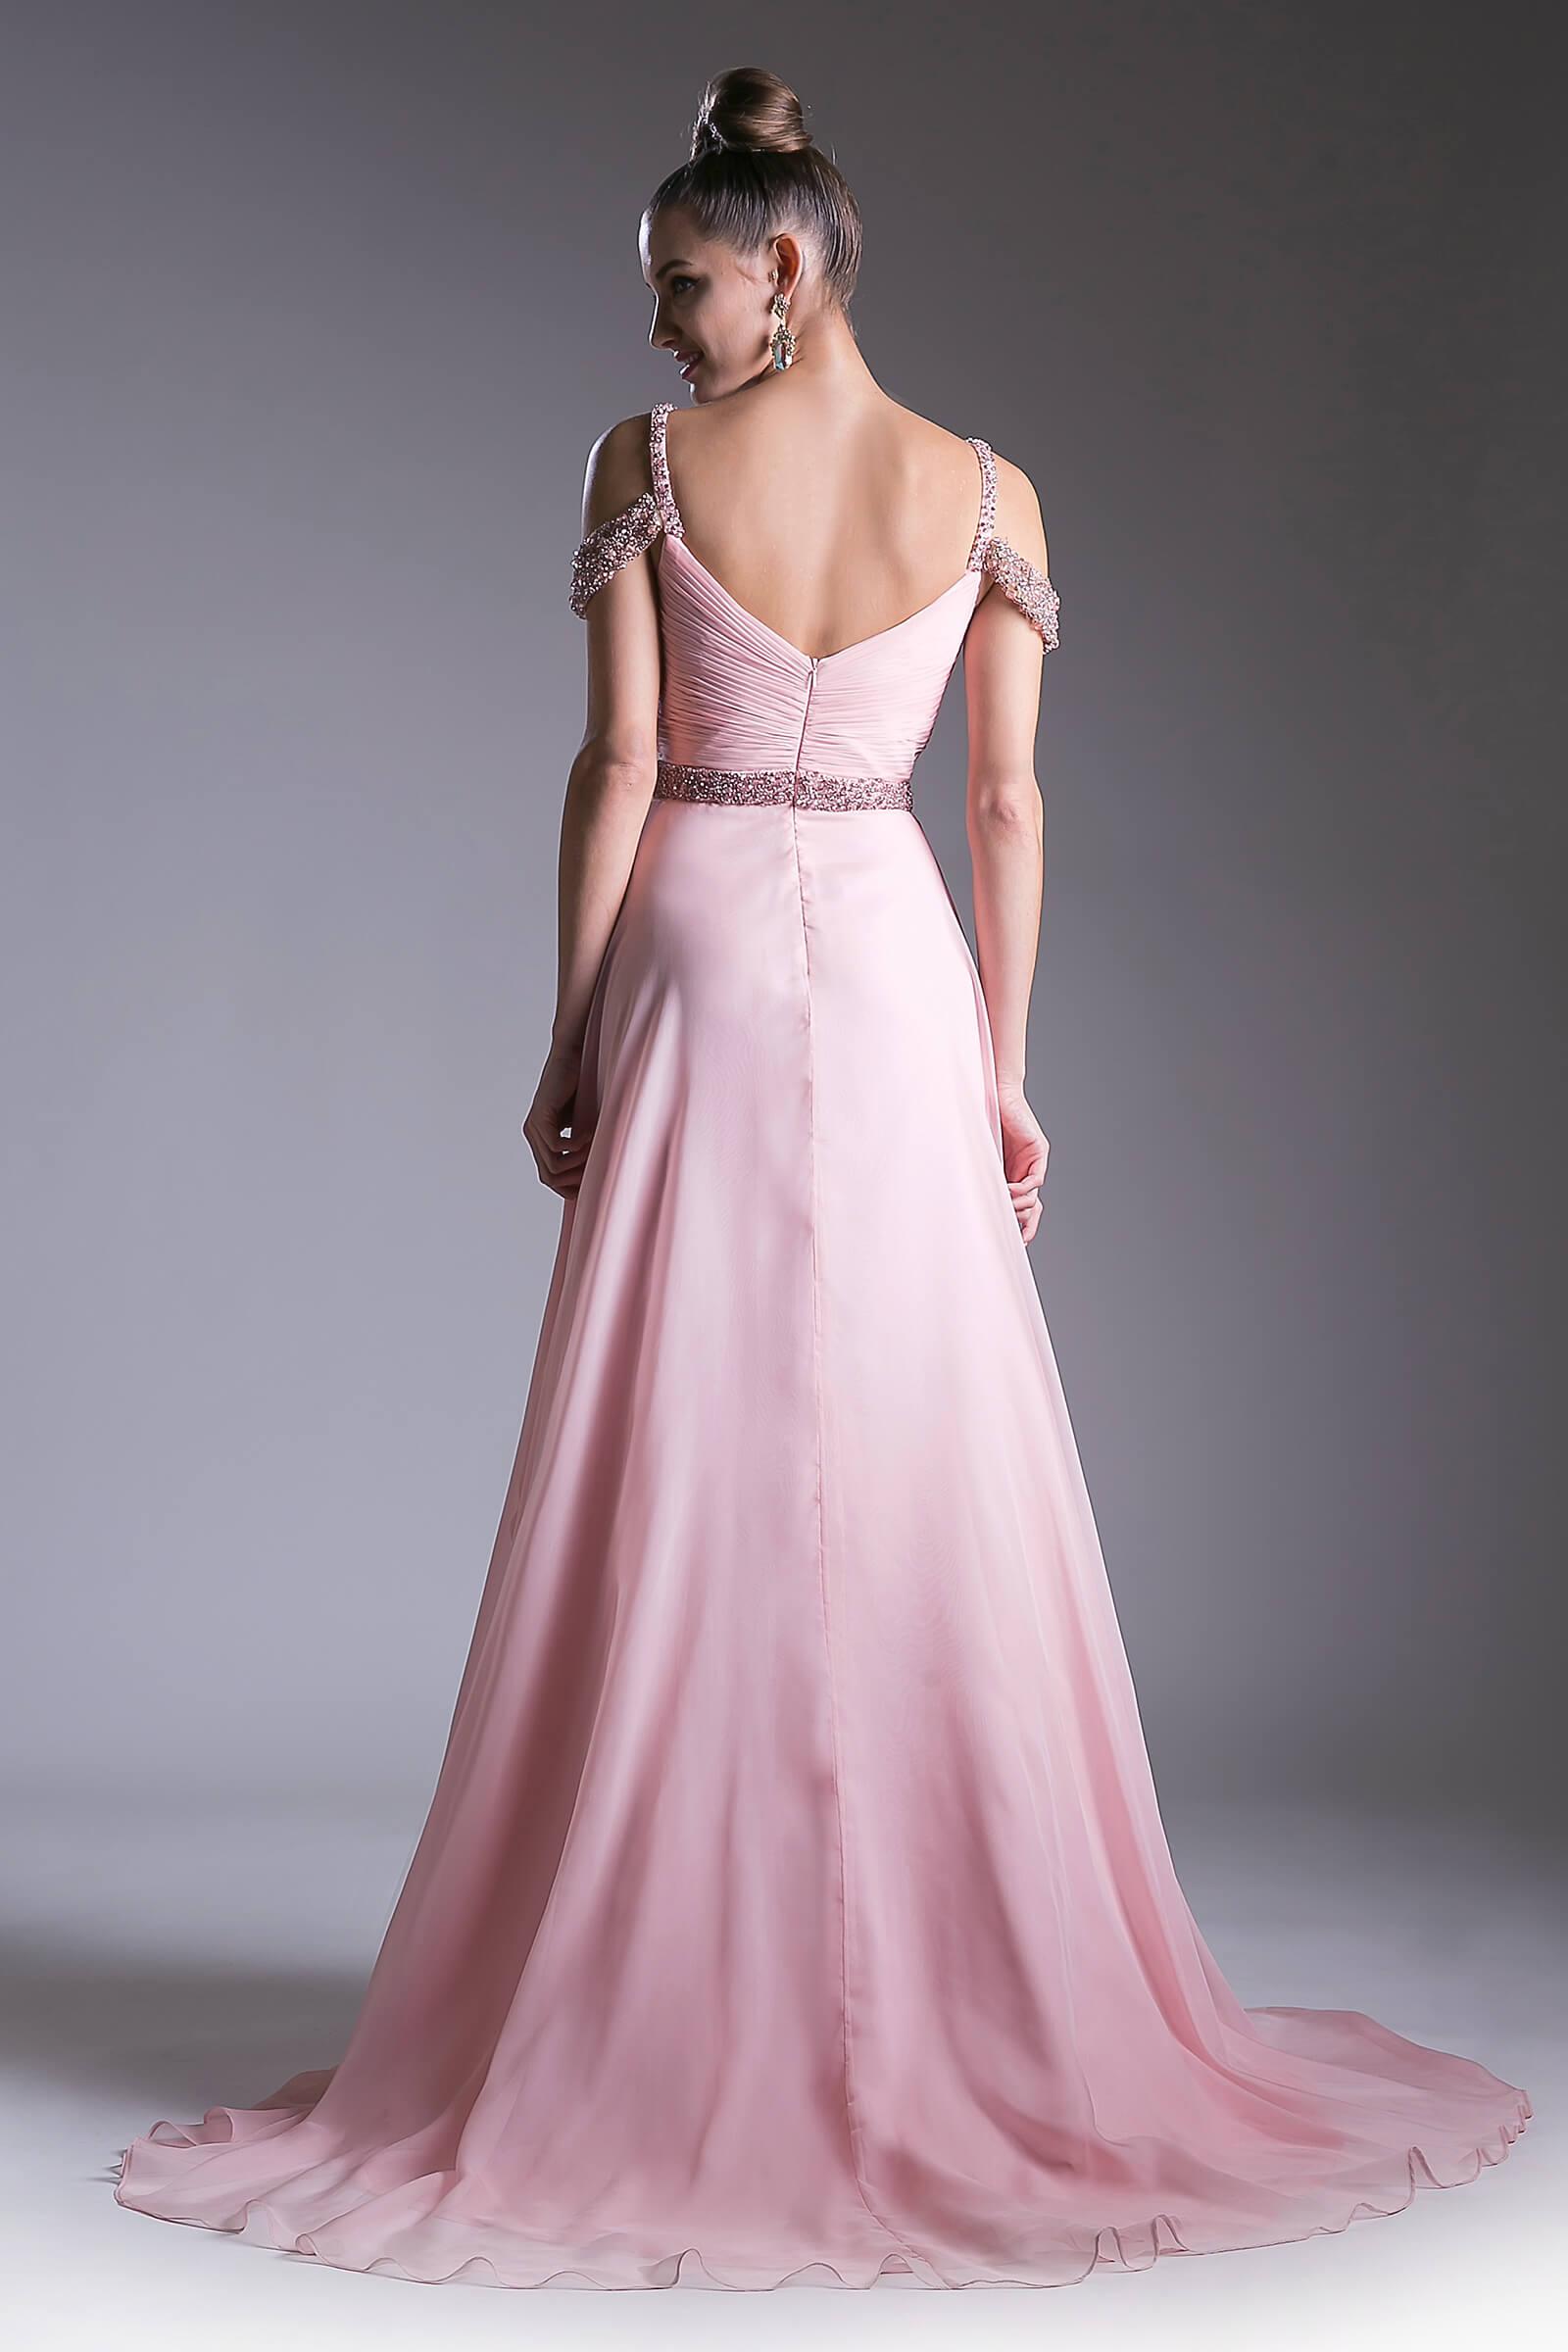 Prom Long Formal Off Shoulder Evening Dress - The Dress Outlet Cinderella Divine